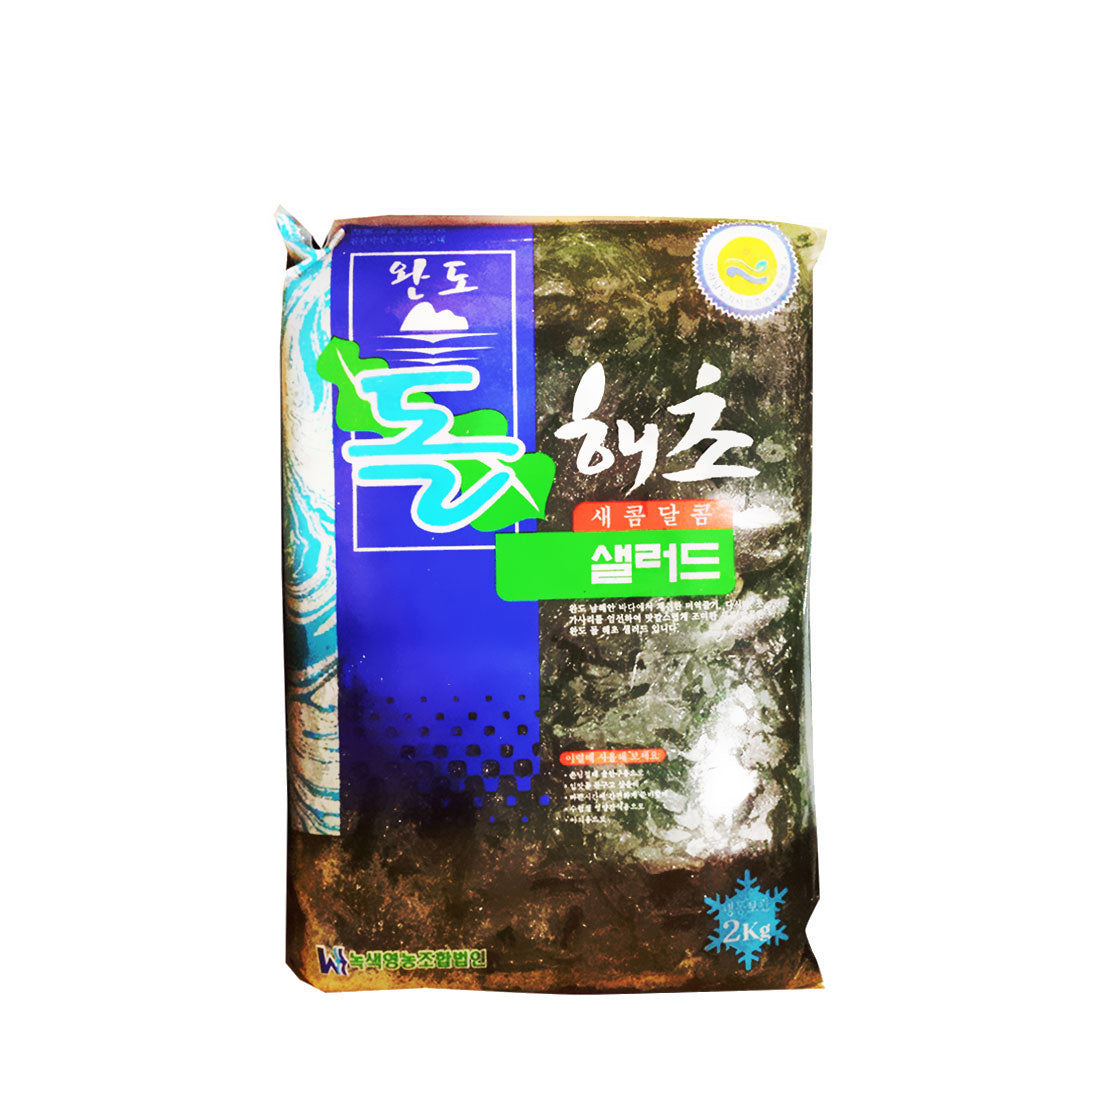 Fzn Mixed Seaweed 6/2kg 청양 해초 무침